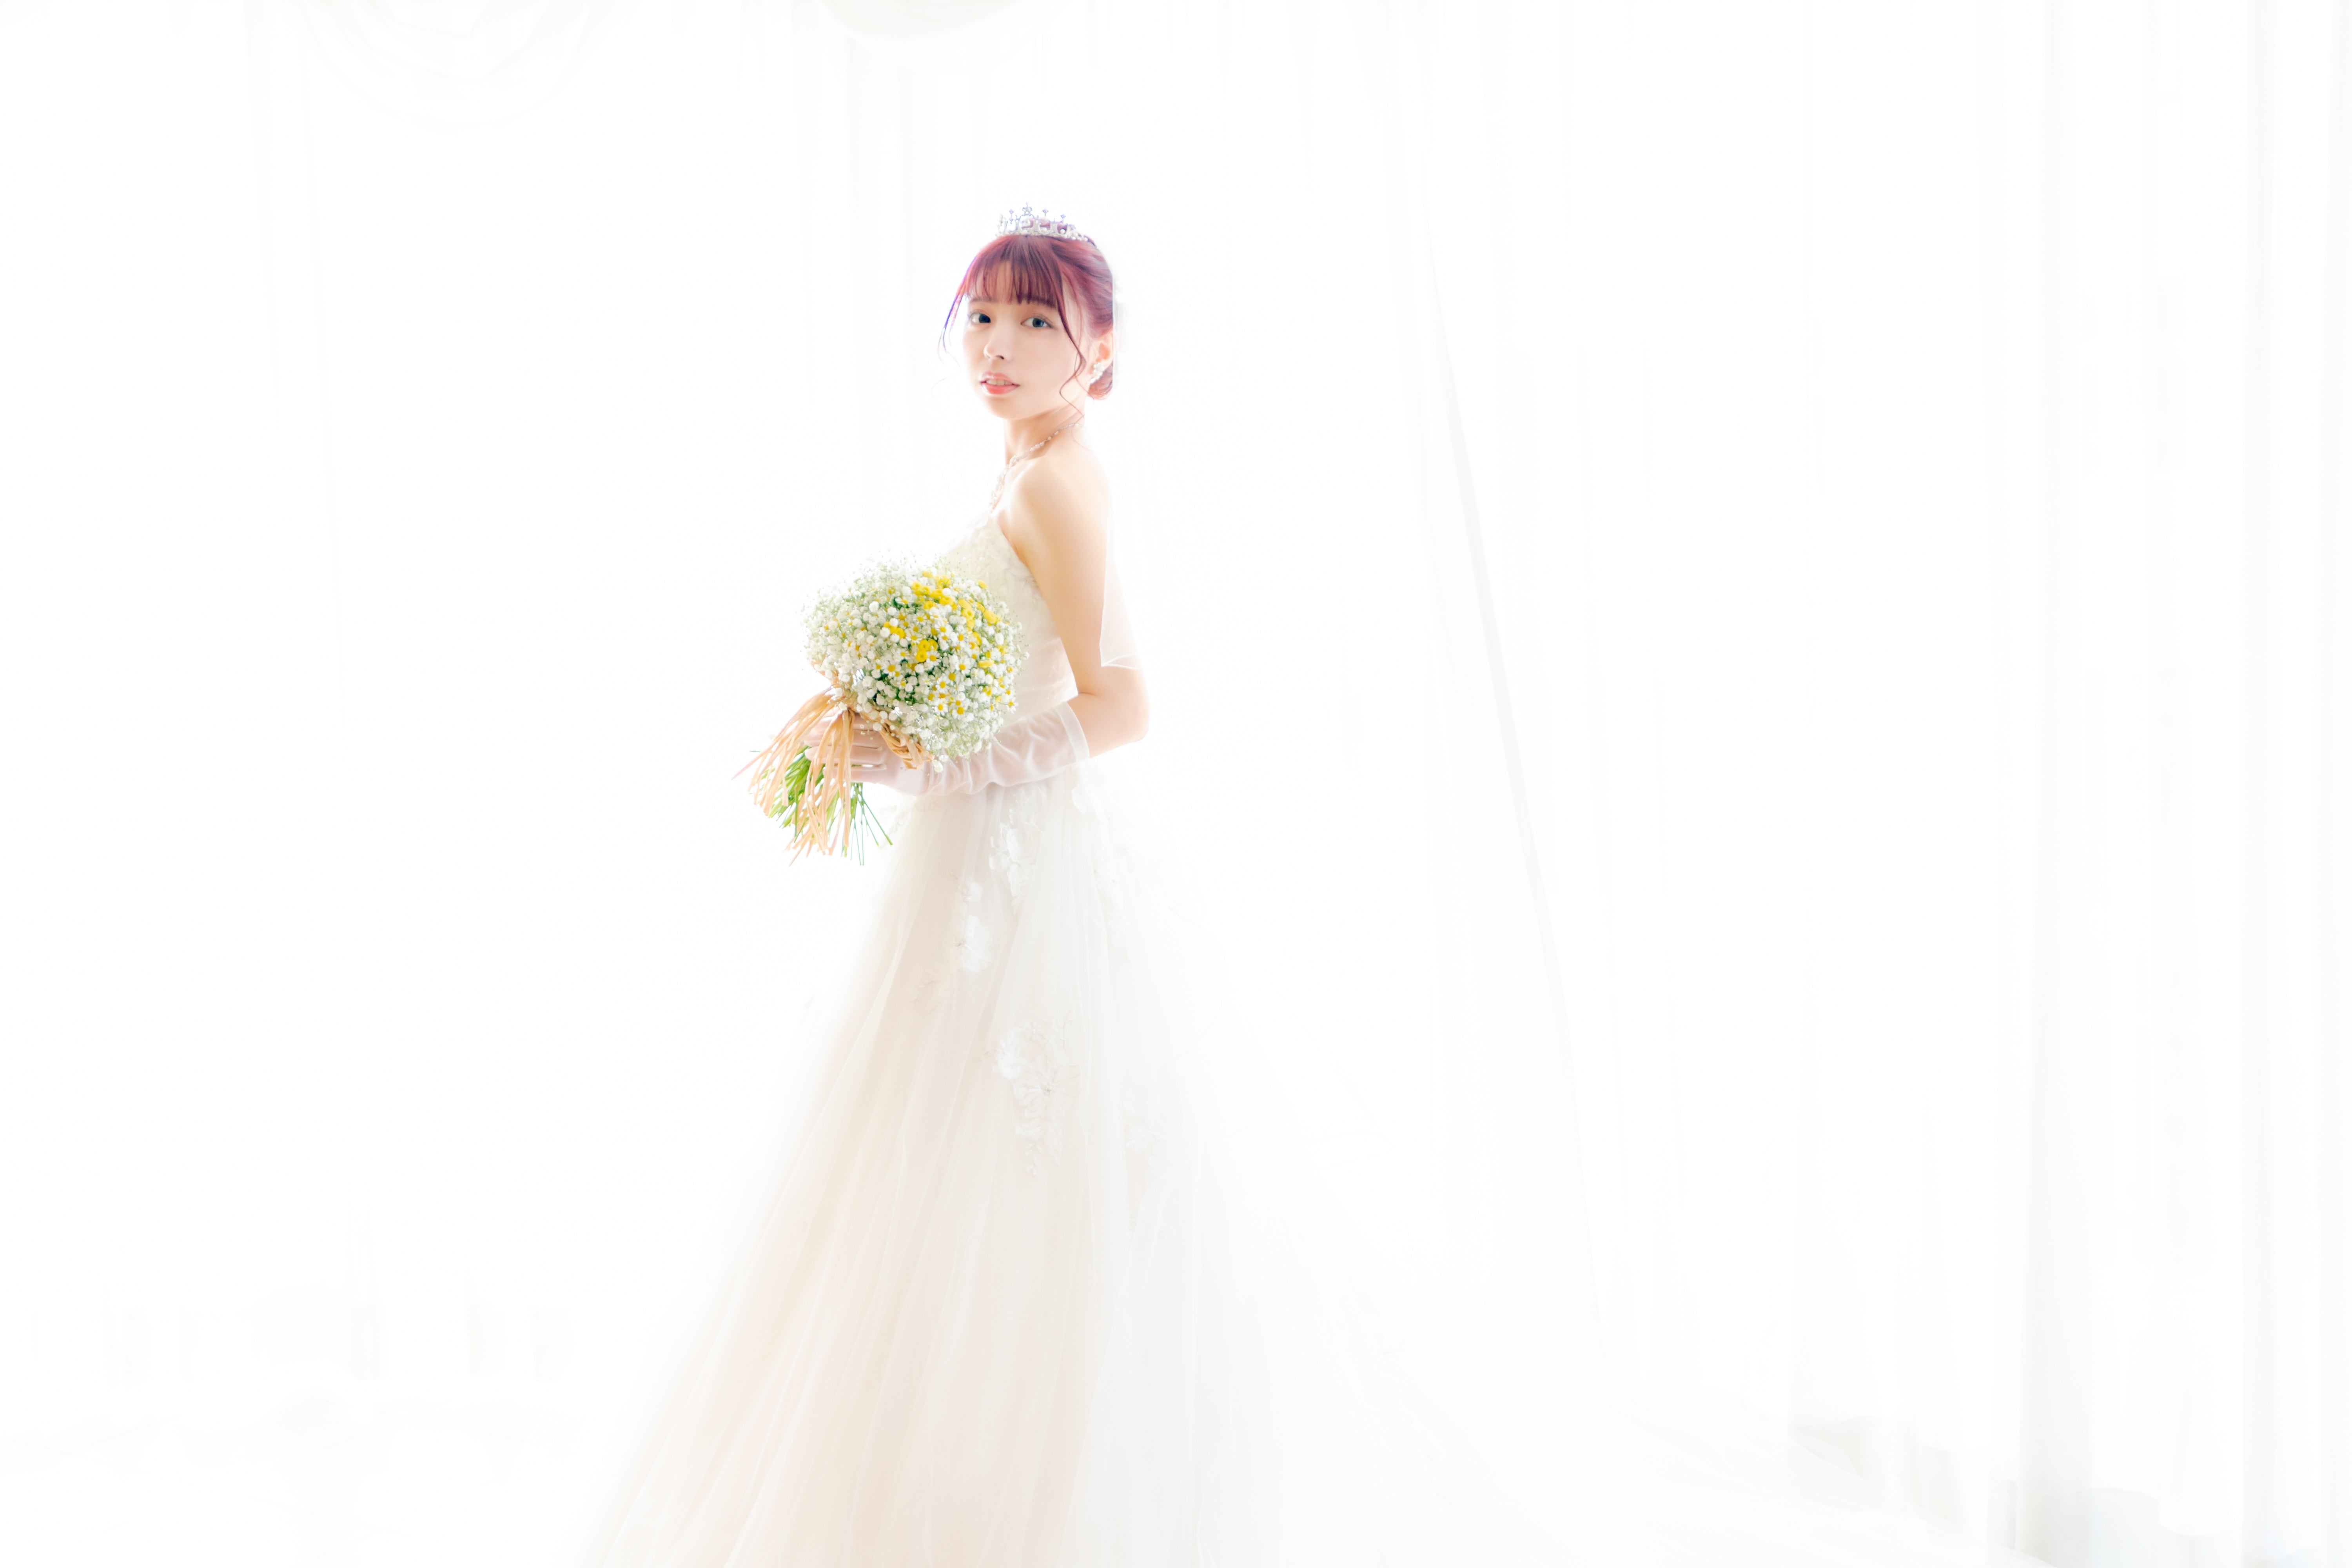 白いウェでlングドレス姿で登場した花嫁のフリー素材